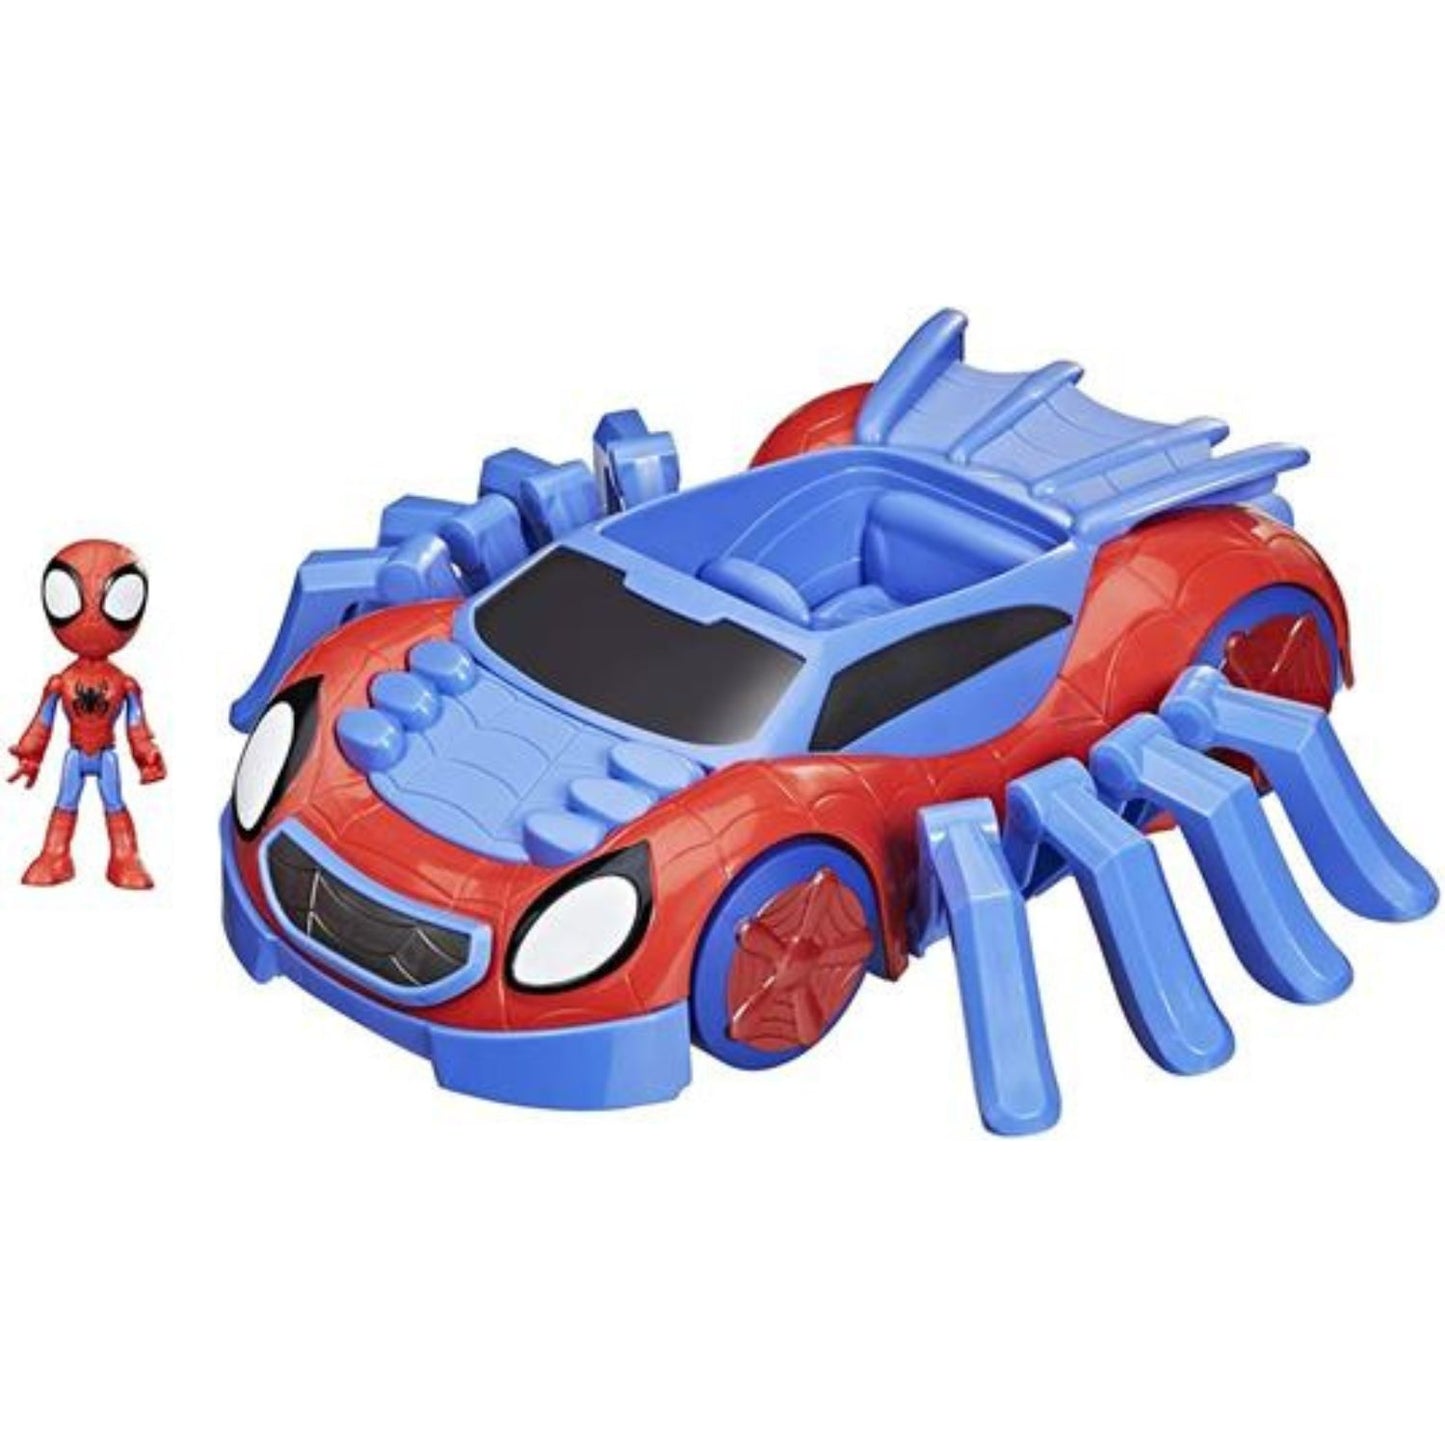 La casa di spider-man set di giochi con spidey e i suoi fantastici